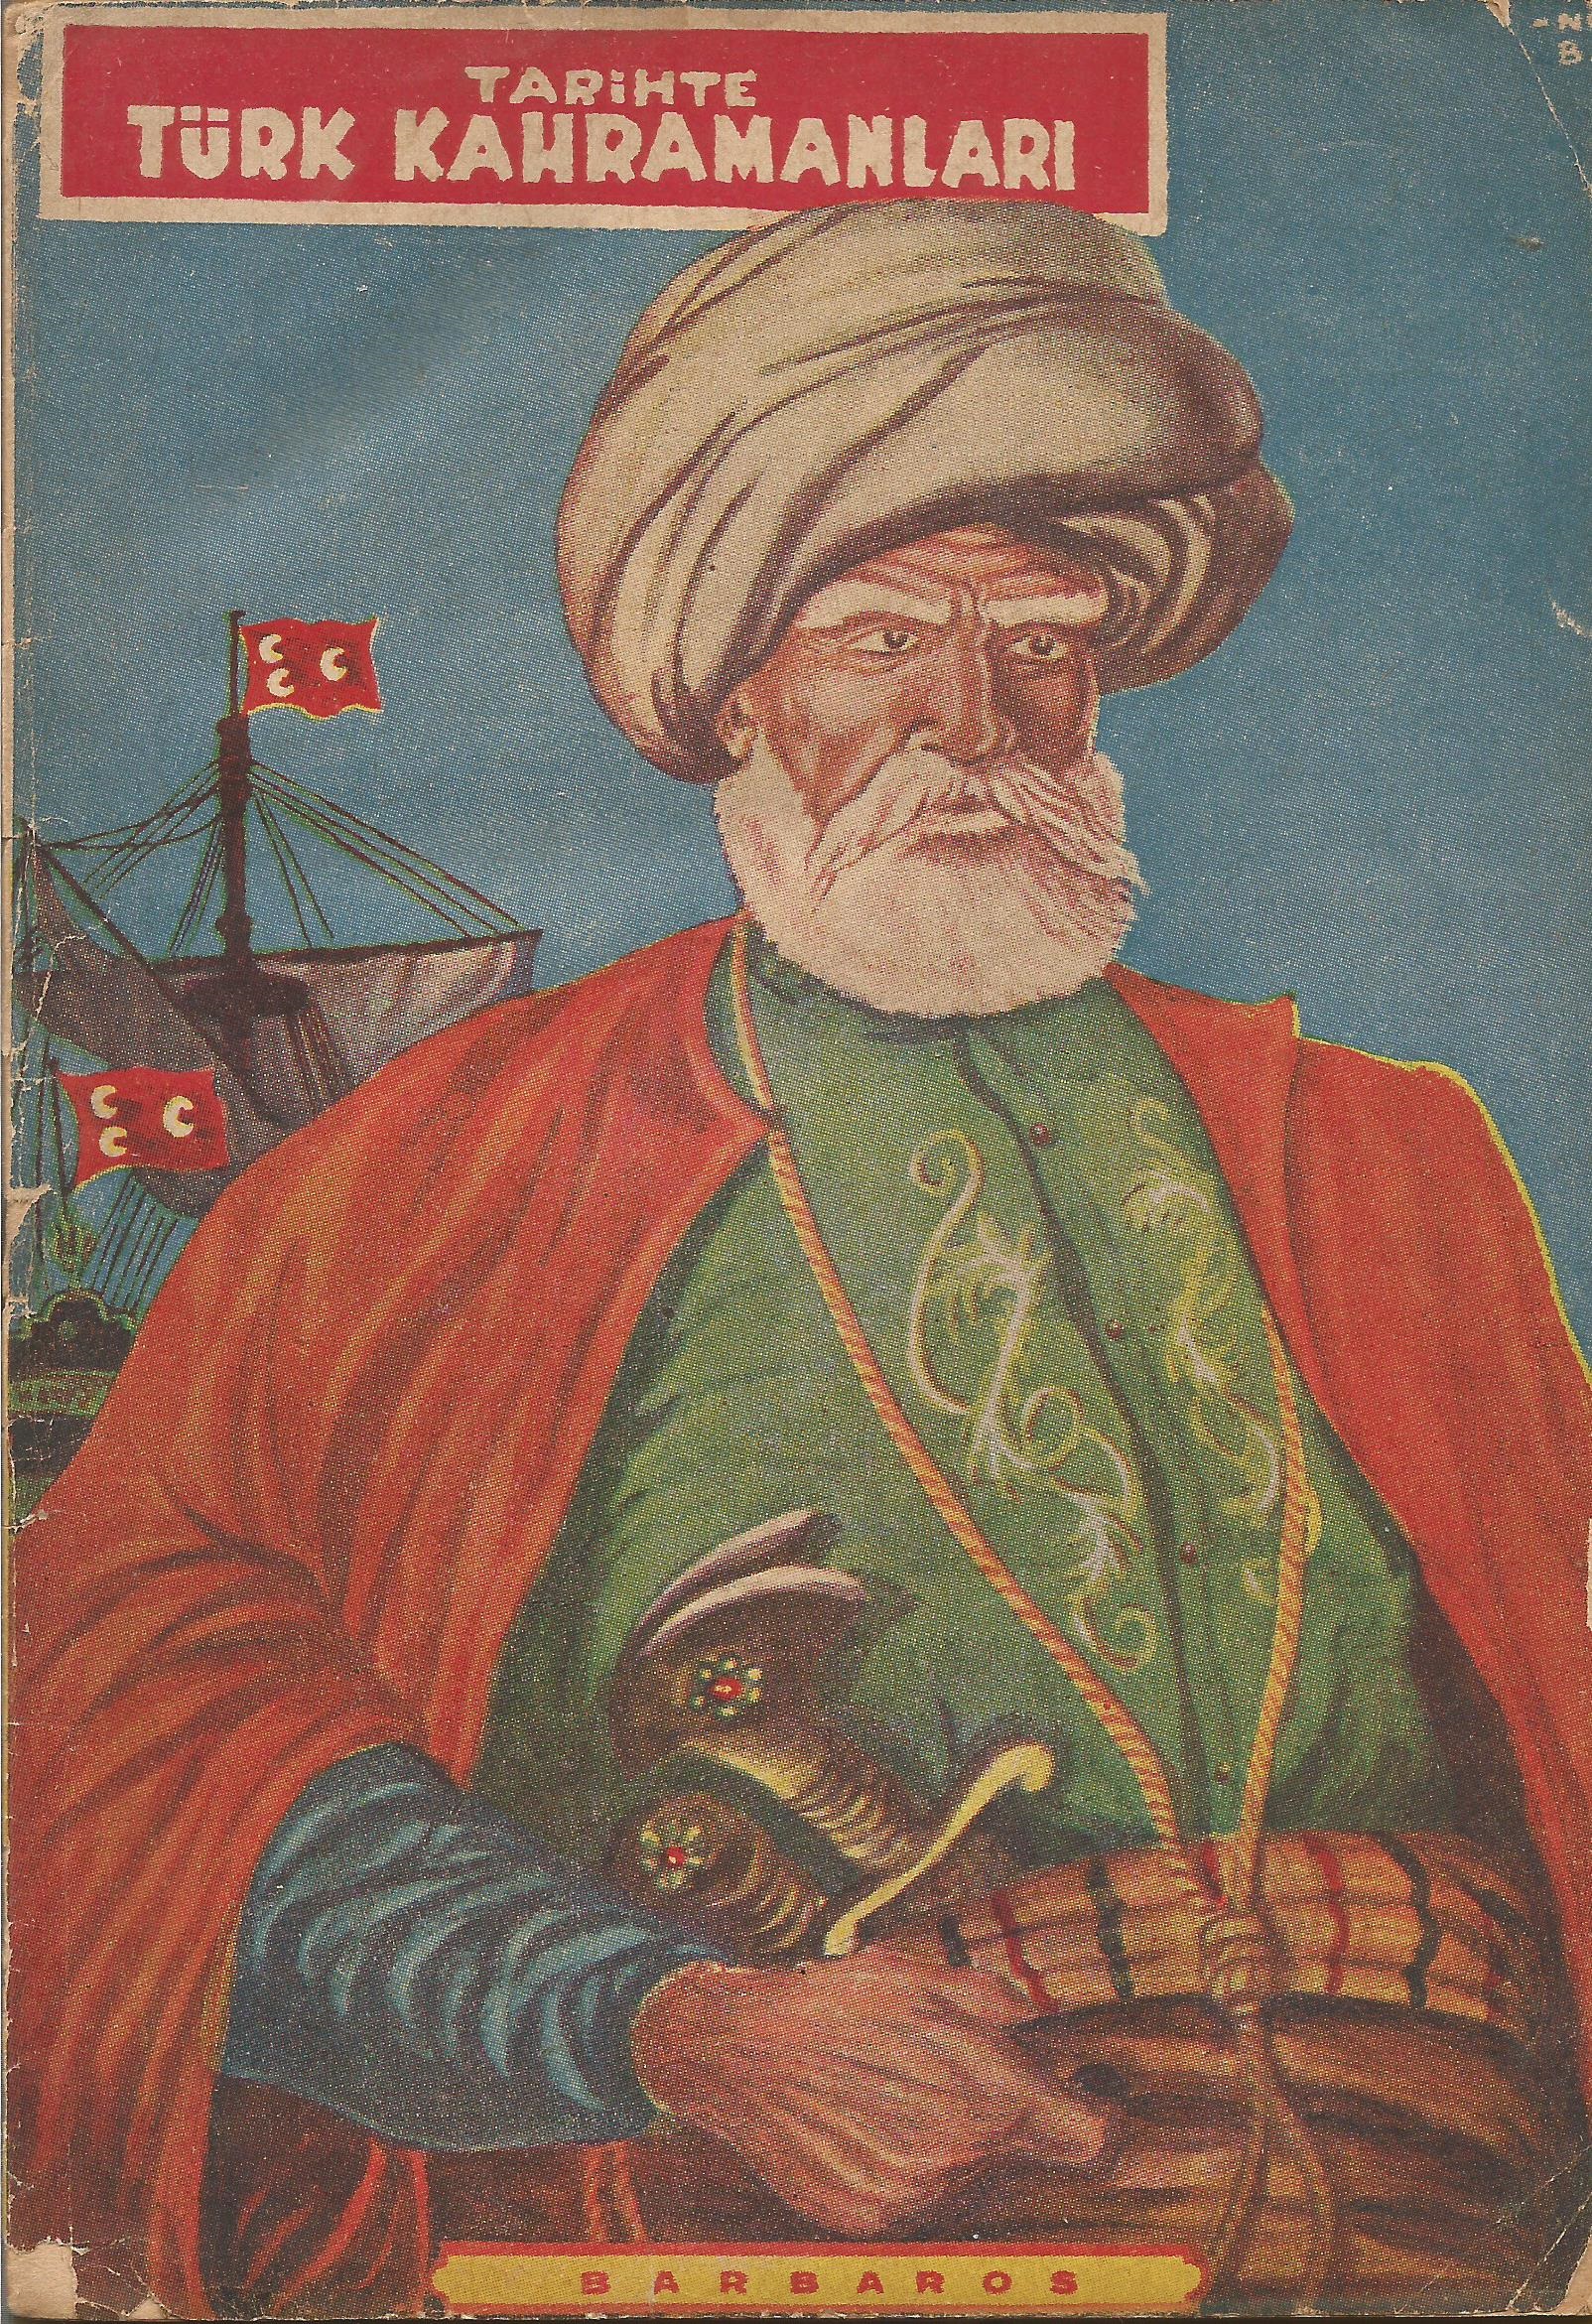 Tarihte Türk Kahramanları - Barbaros Hayreddin Paşa